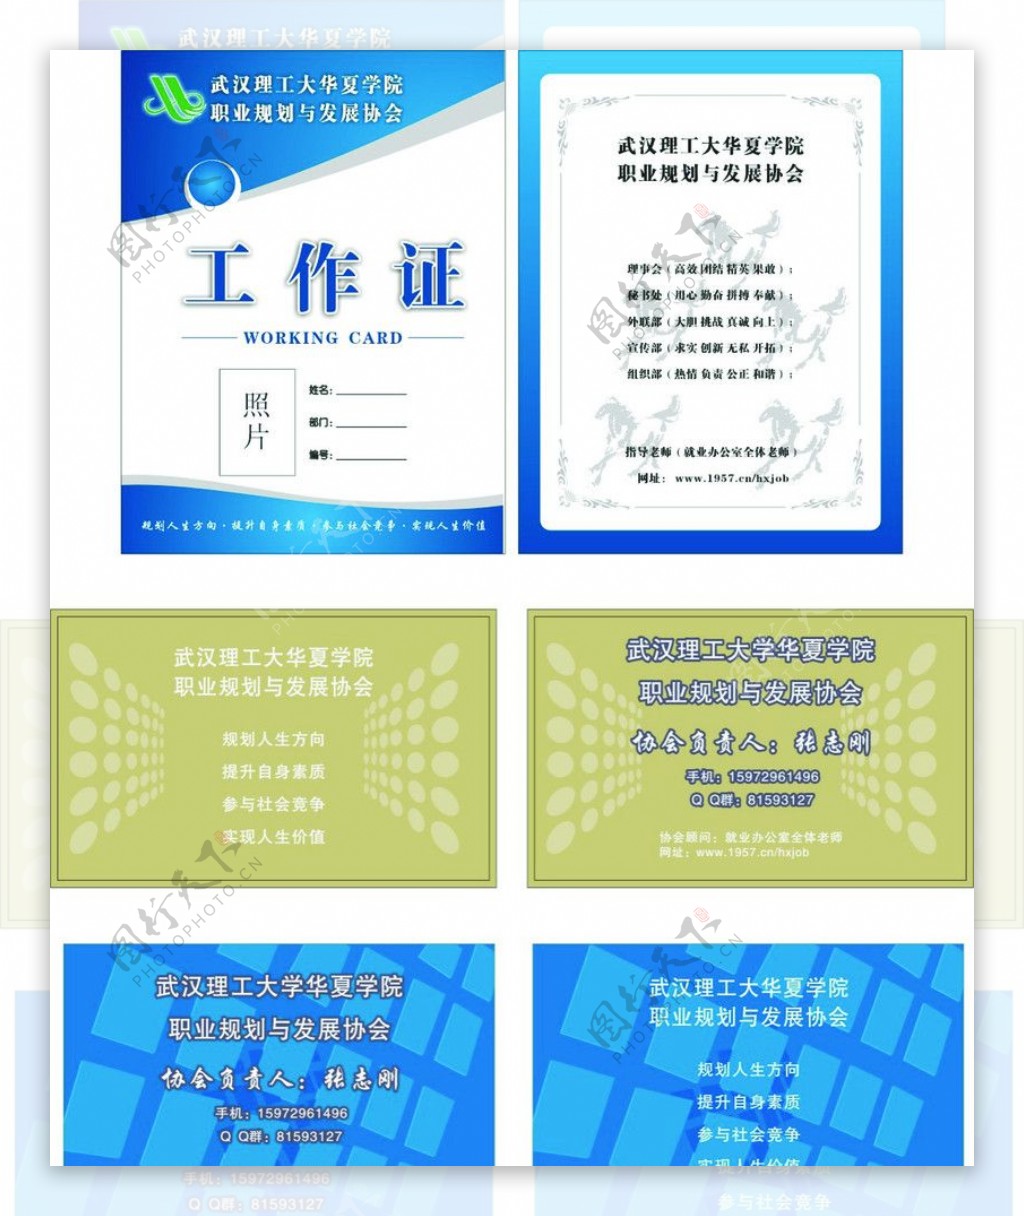 武汉理工大学工作证卡片图片